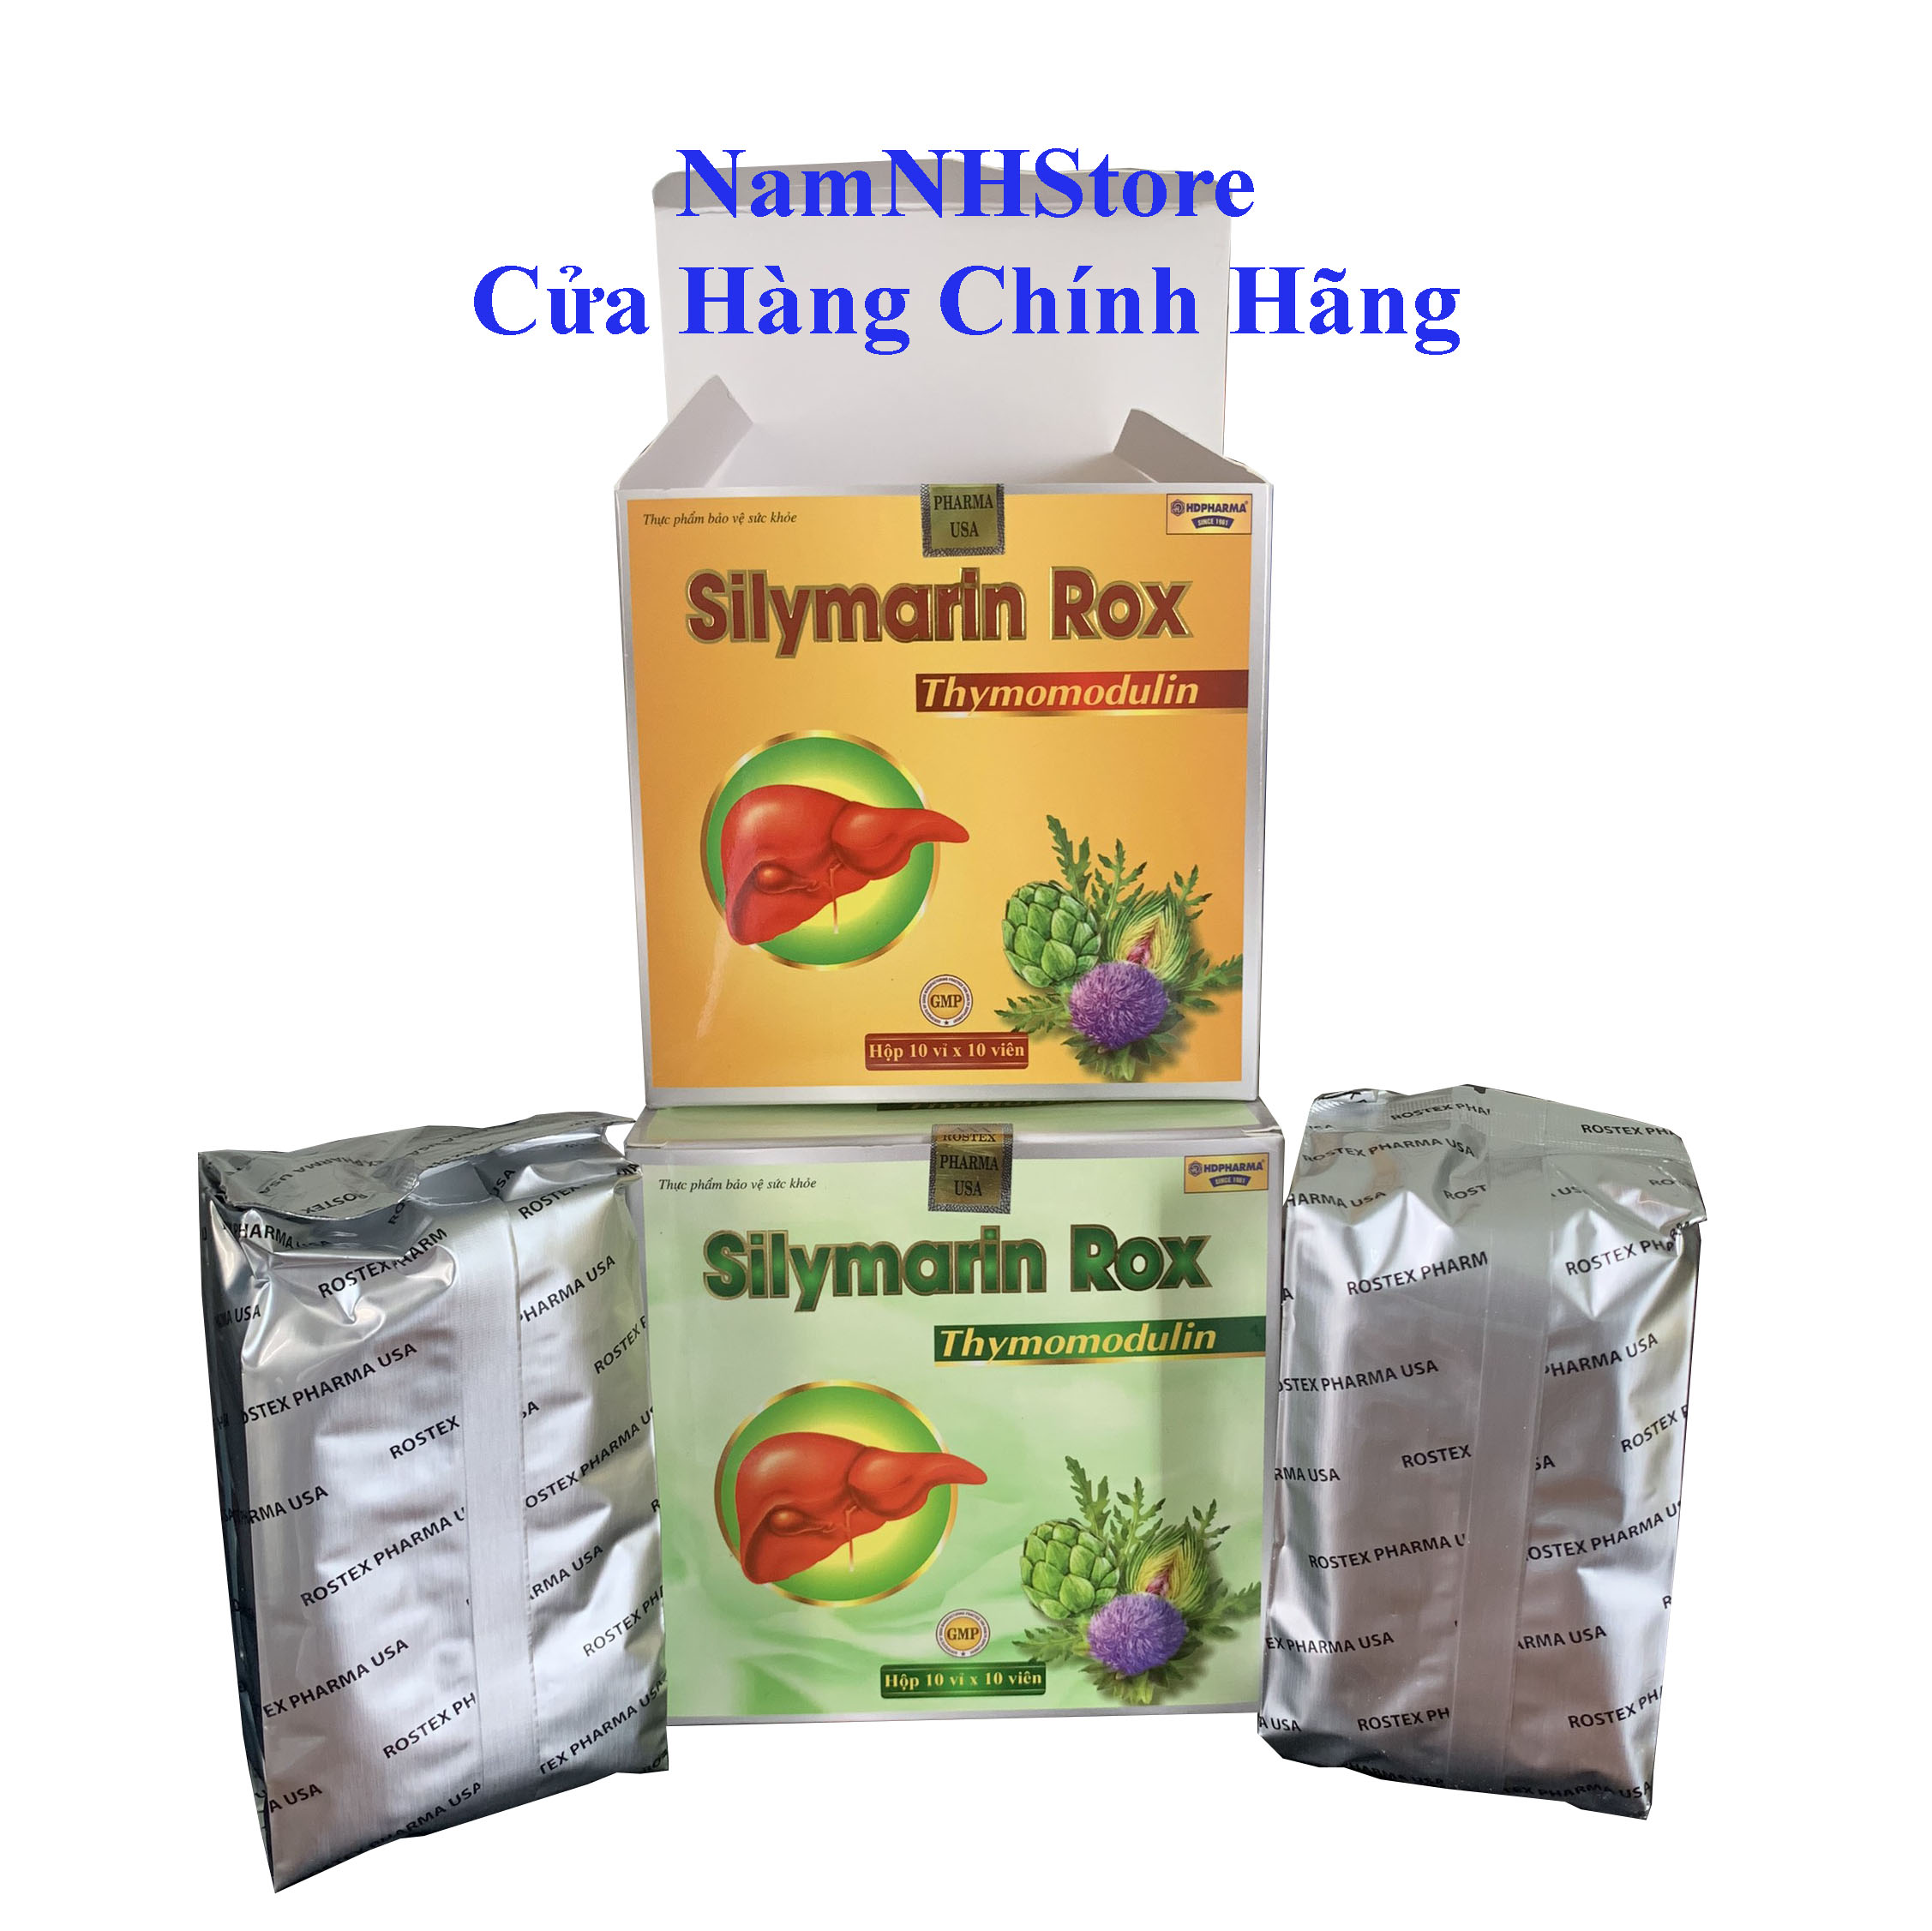 Silymarin rox - giúp mát gan, giải độc gan, bảo vệ gan